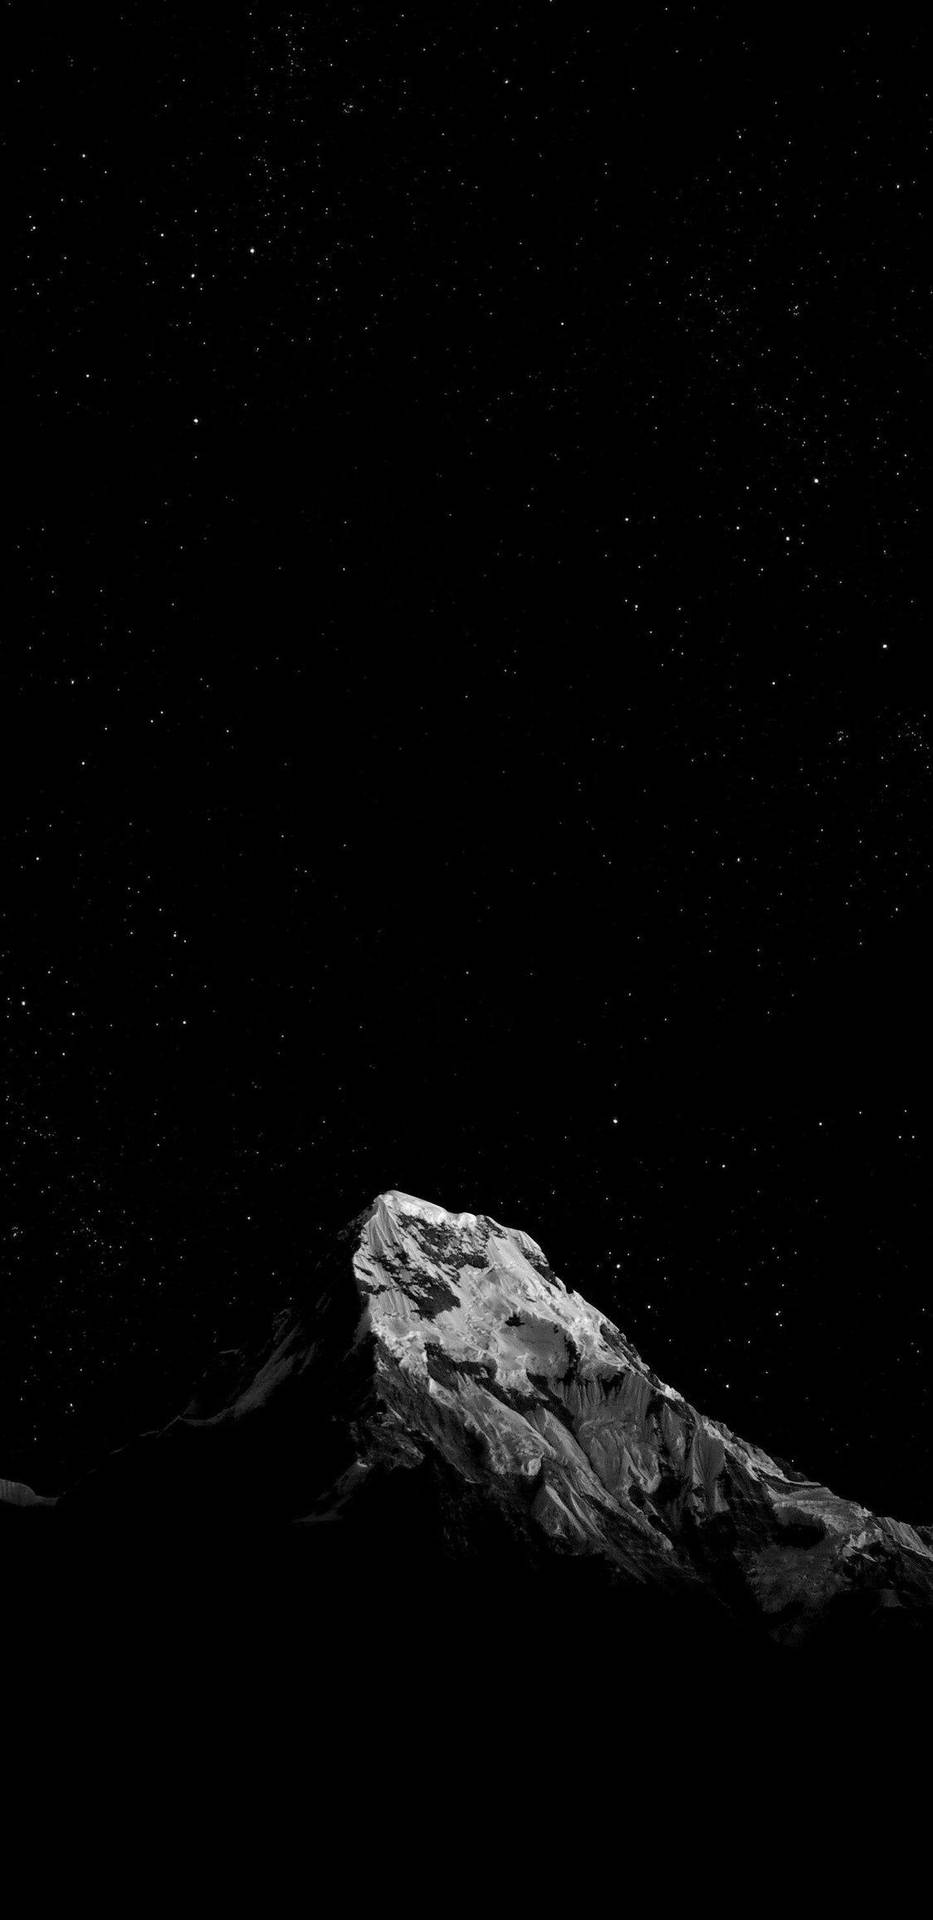 Mejorfondo De Pantalla Oled De La Cima De La Montaña. Fondo de pantalla